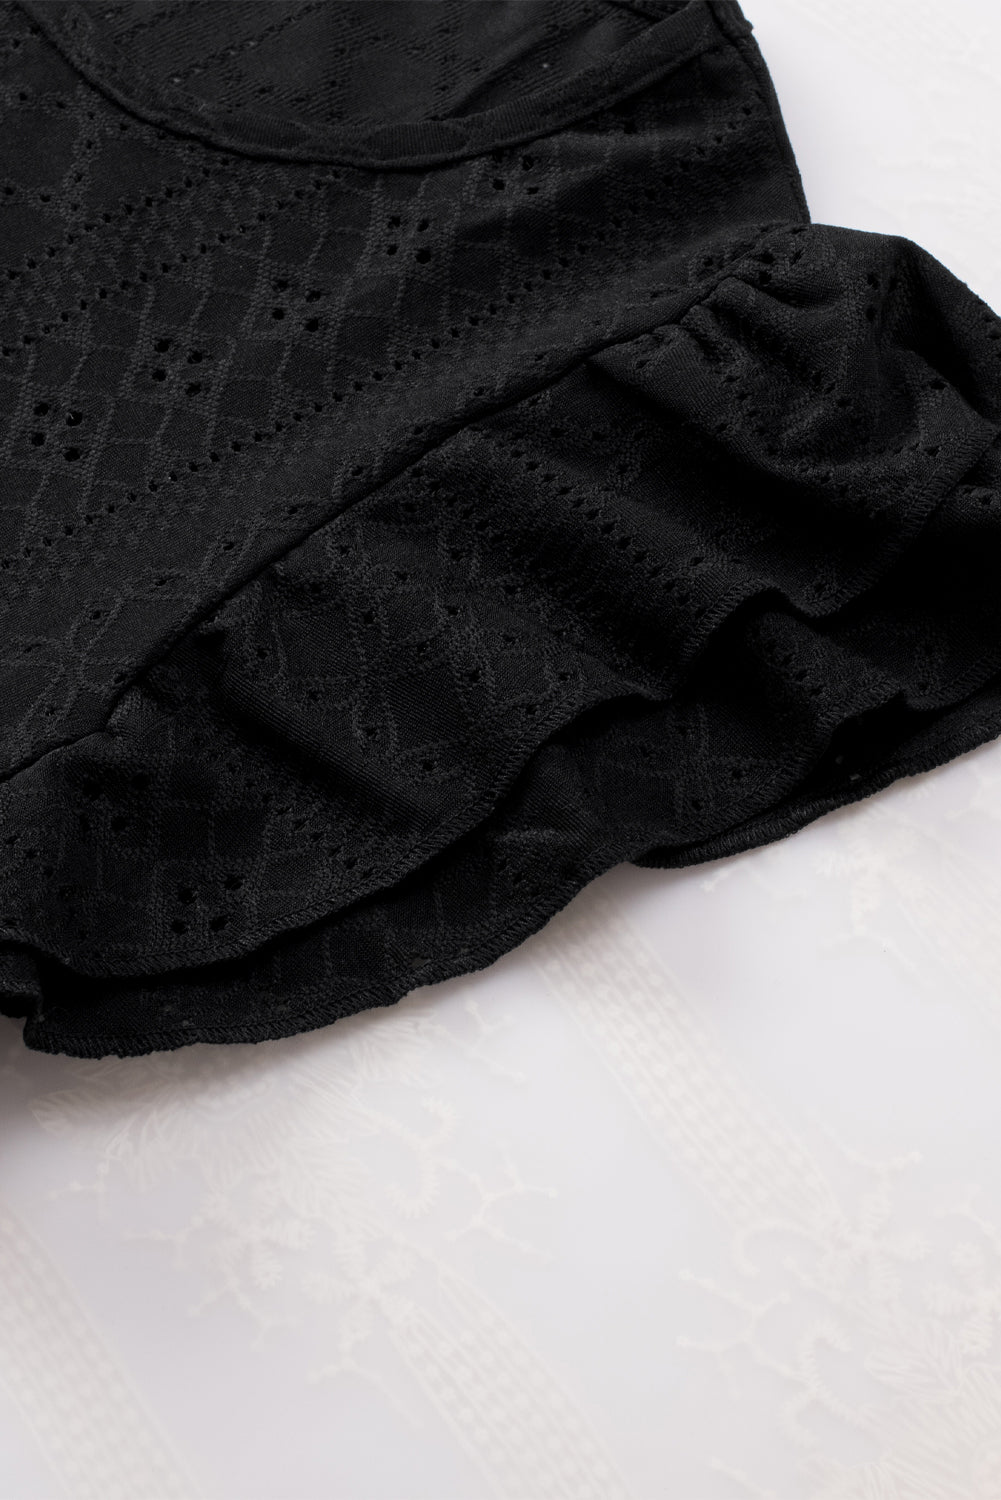 Blouse noire à manches courtes et volants texturés en losange